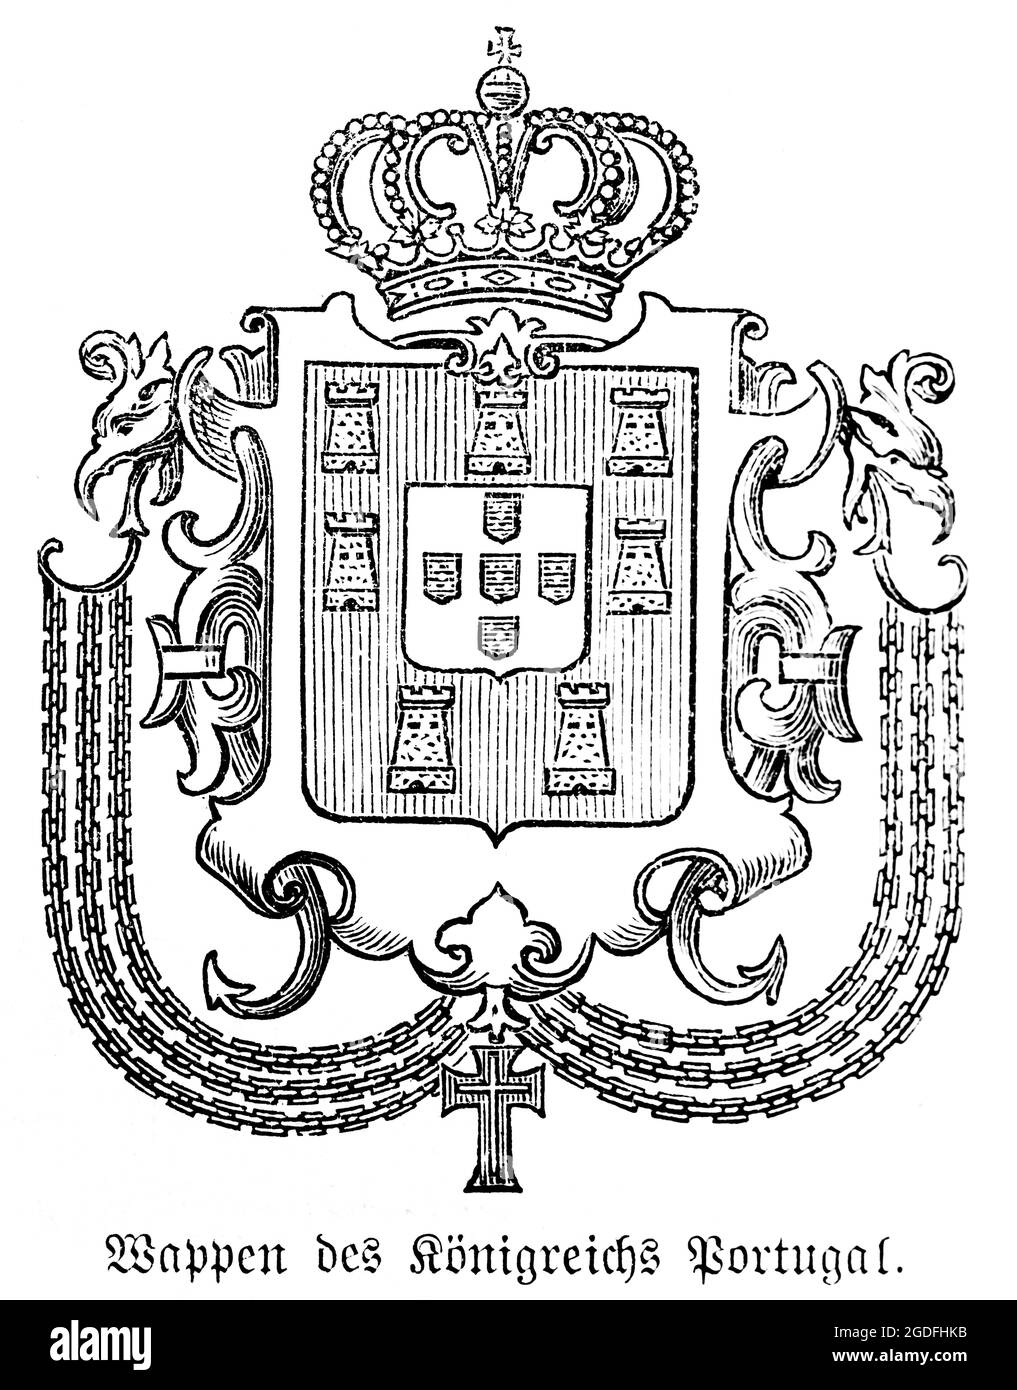 Wappen des Königreichs Portugal im 16. Jahrhundert, historische Illustration 1881 Stockfoto